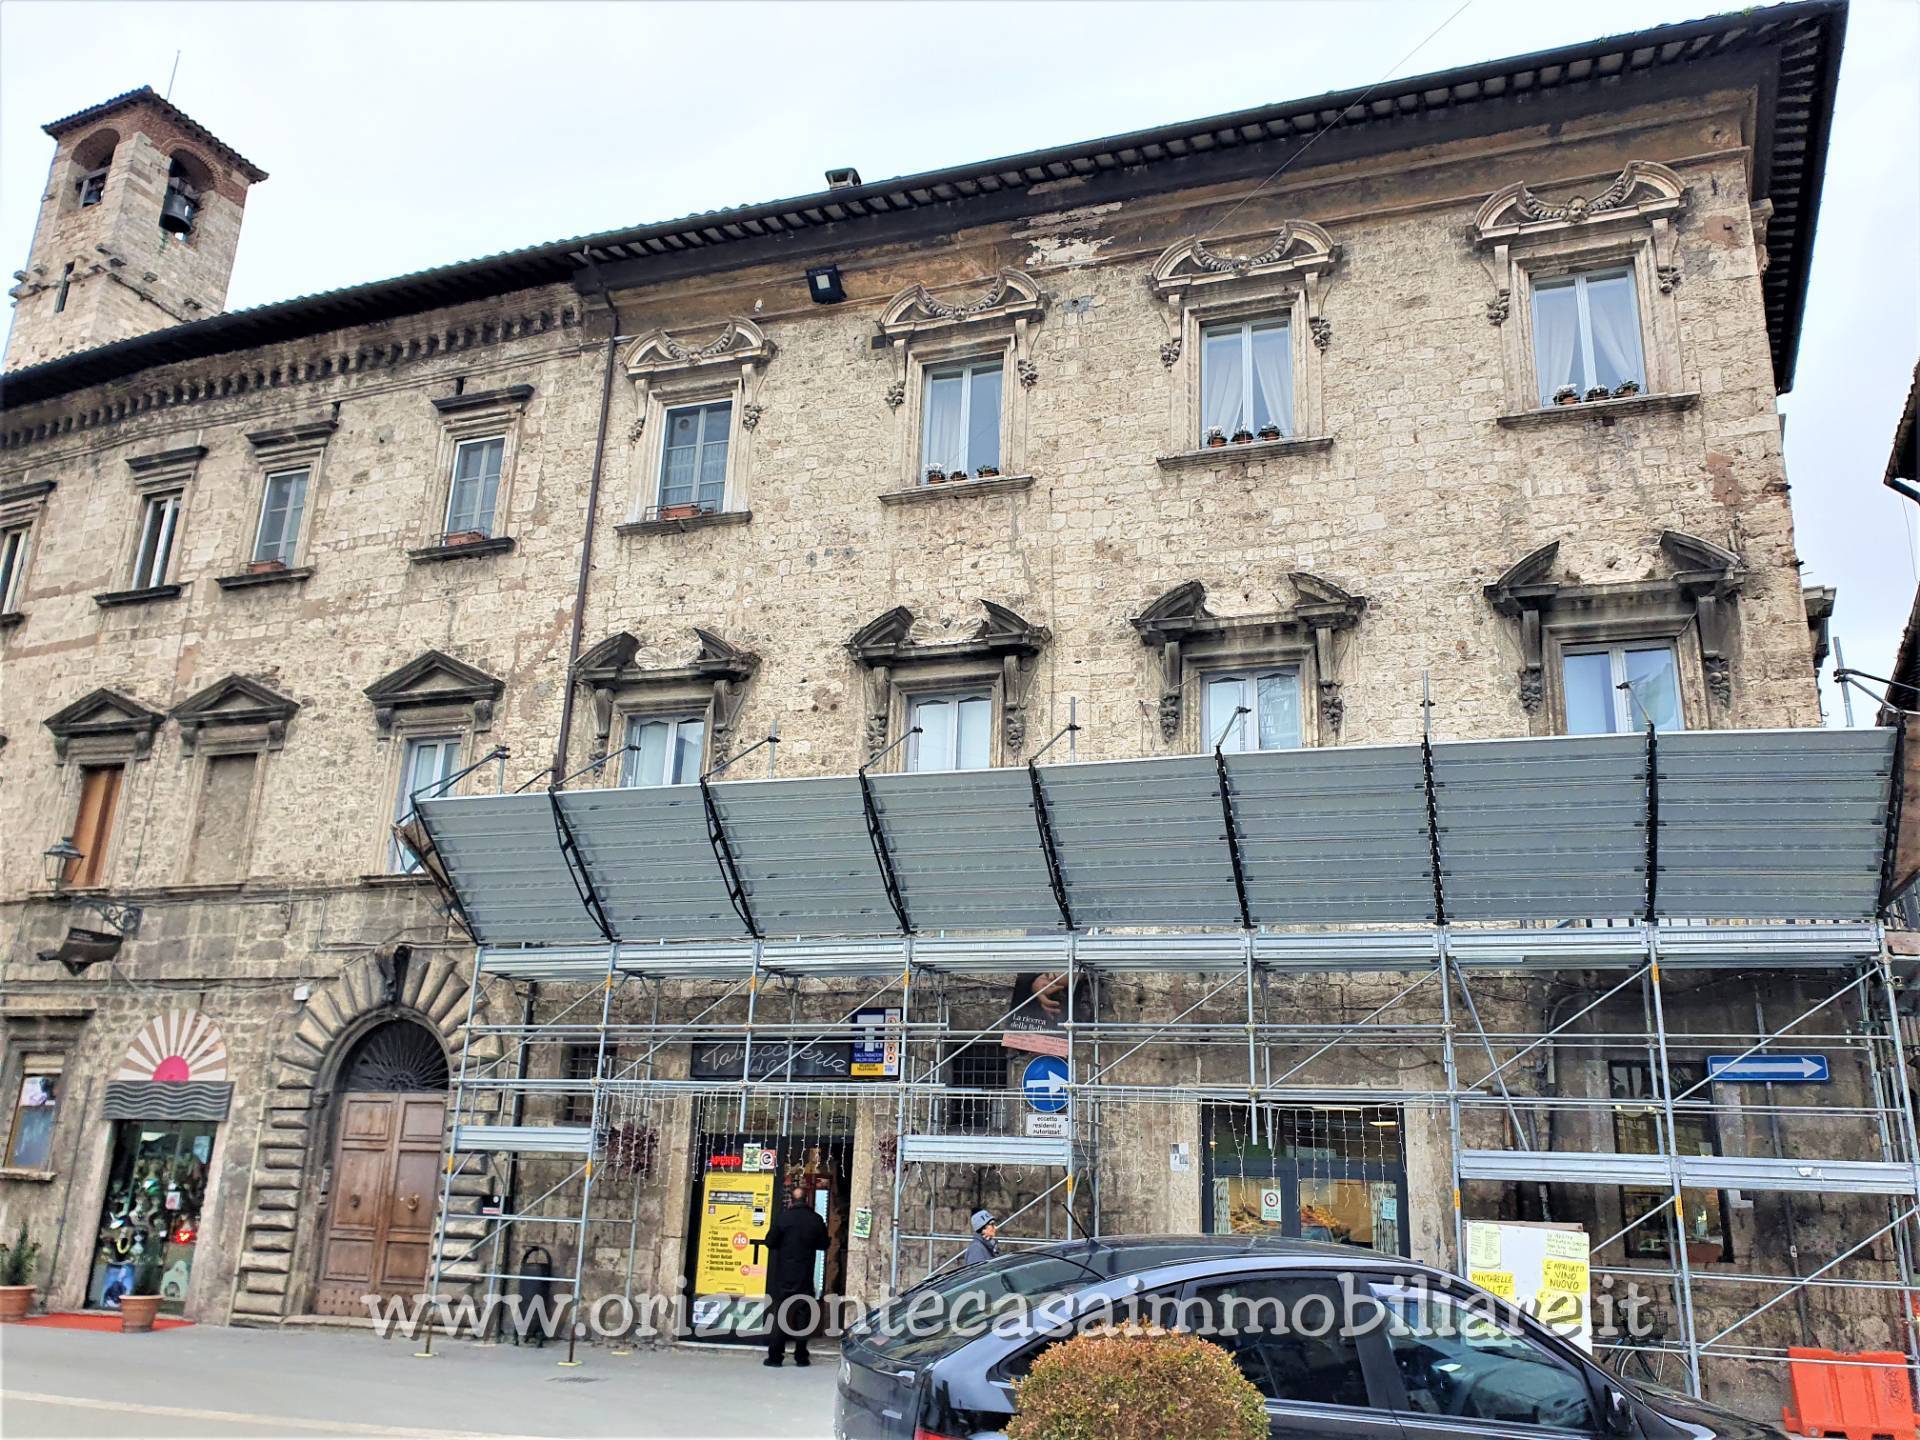 Attico / Mansarda in vendita a Ascoli Piceno, 4 locali, zona Località: CentroStorico, prezzo € 84.000 | PortaleAgenzieImmobiliari.it